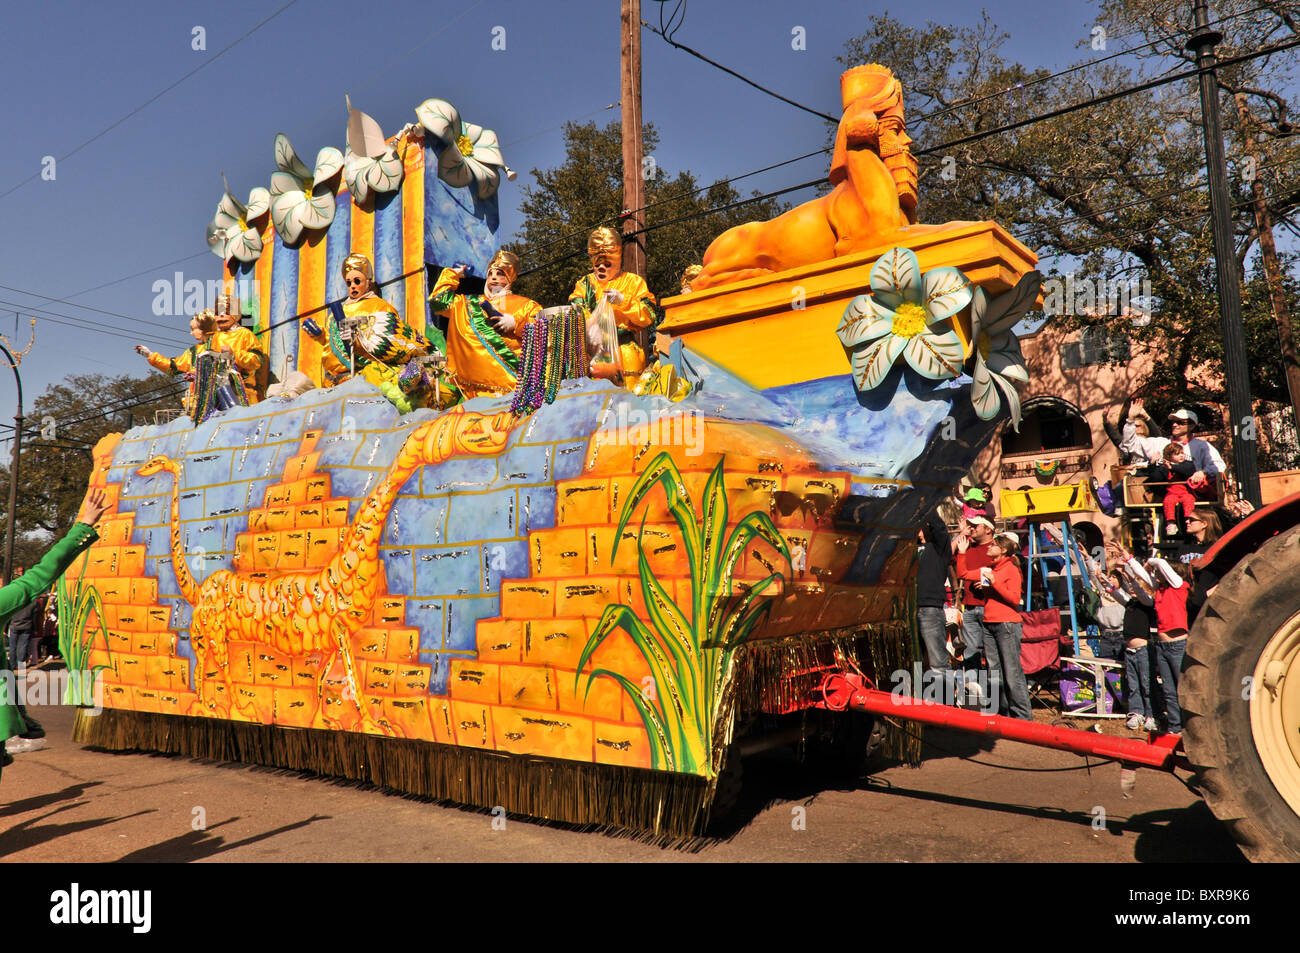 Float in Knights of Babylon parade, Mardi Gras 2010, New Orleans, Louisiana Stock Photo